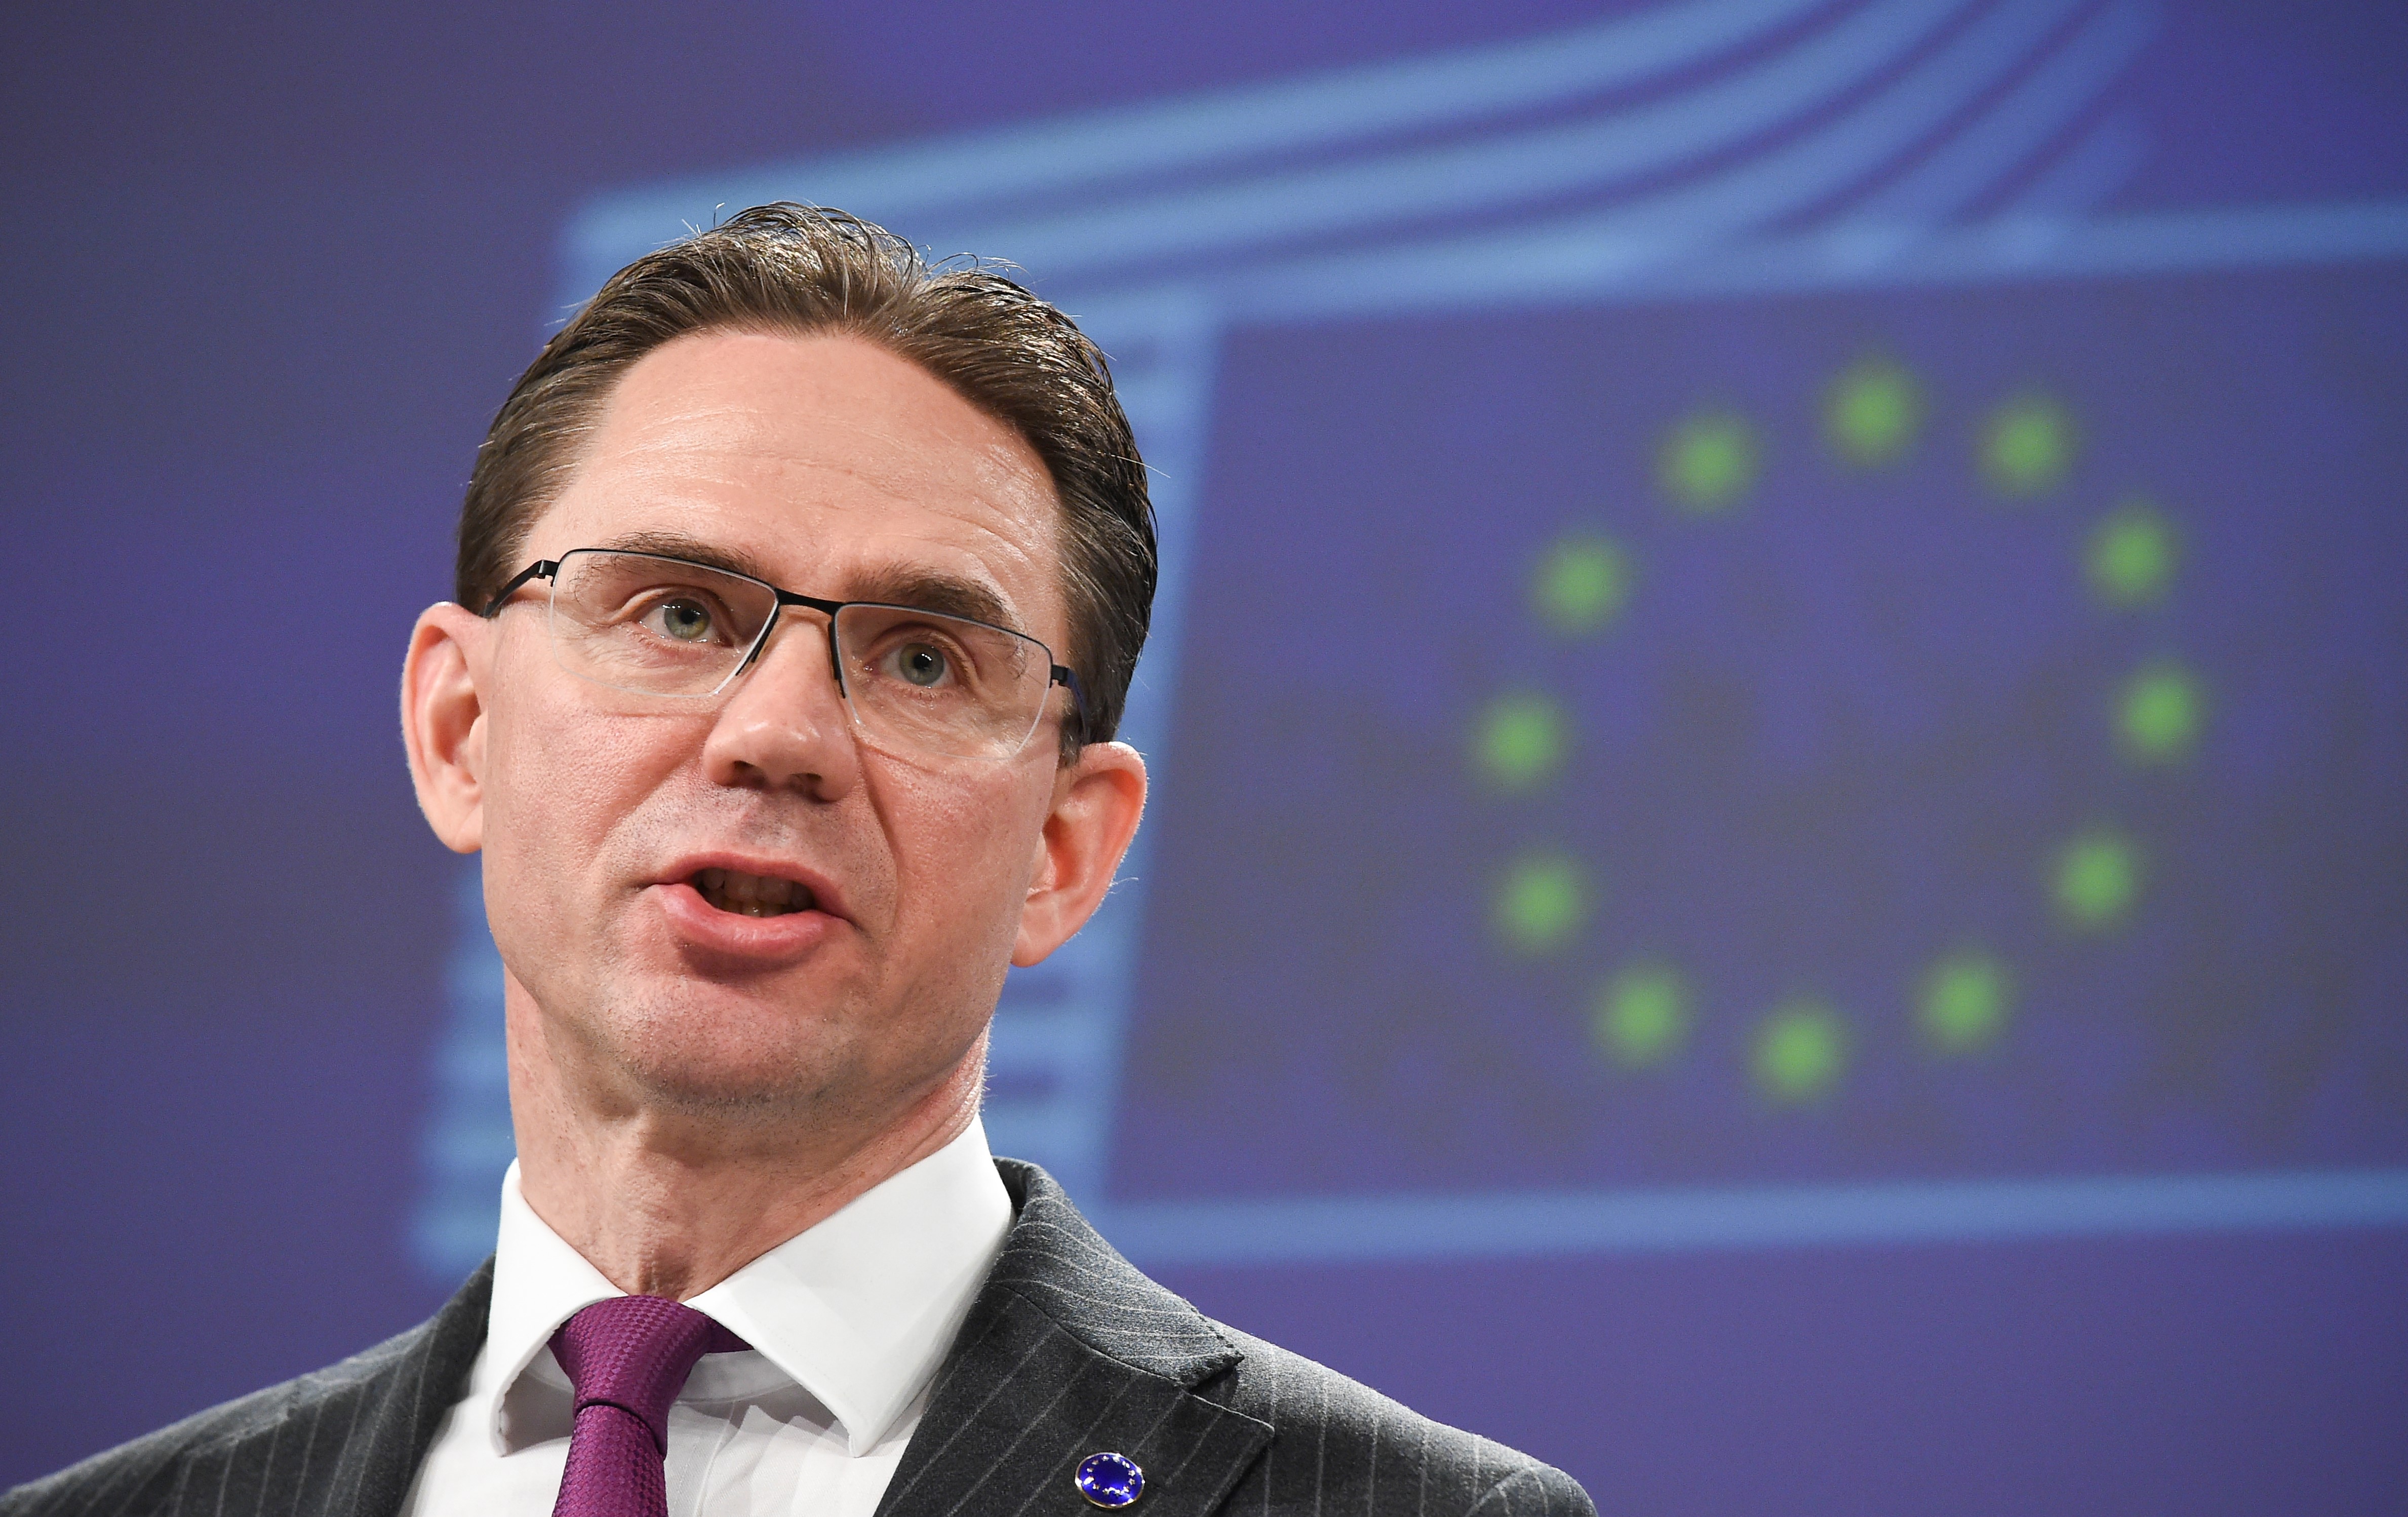 Néppárti EU-biztos: „Nem látom be, hogy európai adófizetők pénzét miért használják fel olyan országokban, ahol nem tartják tiszteletben a jogállamiságot”